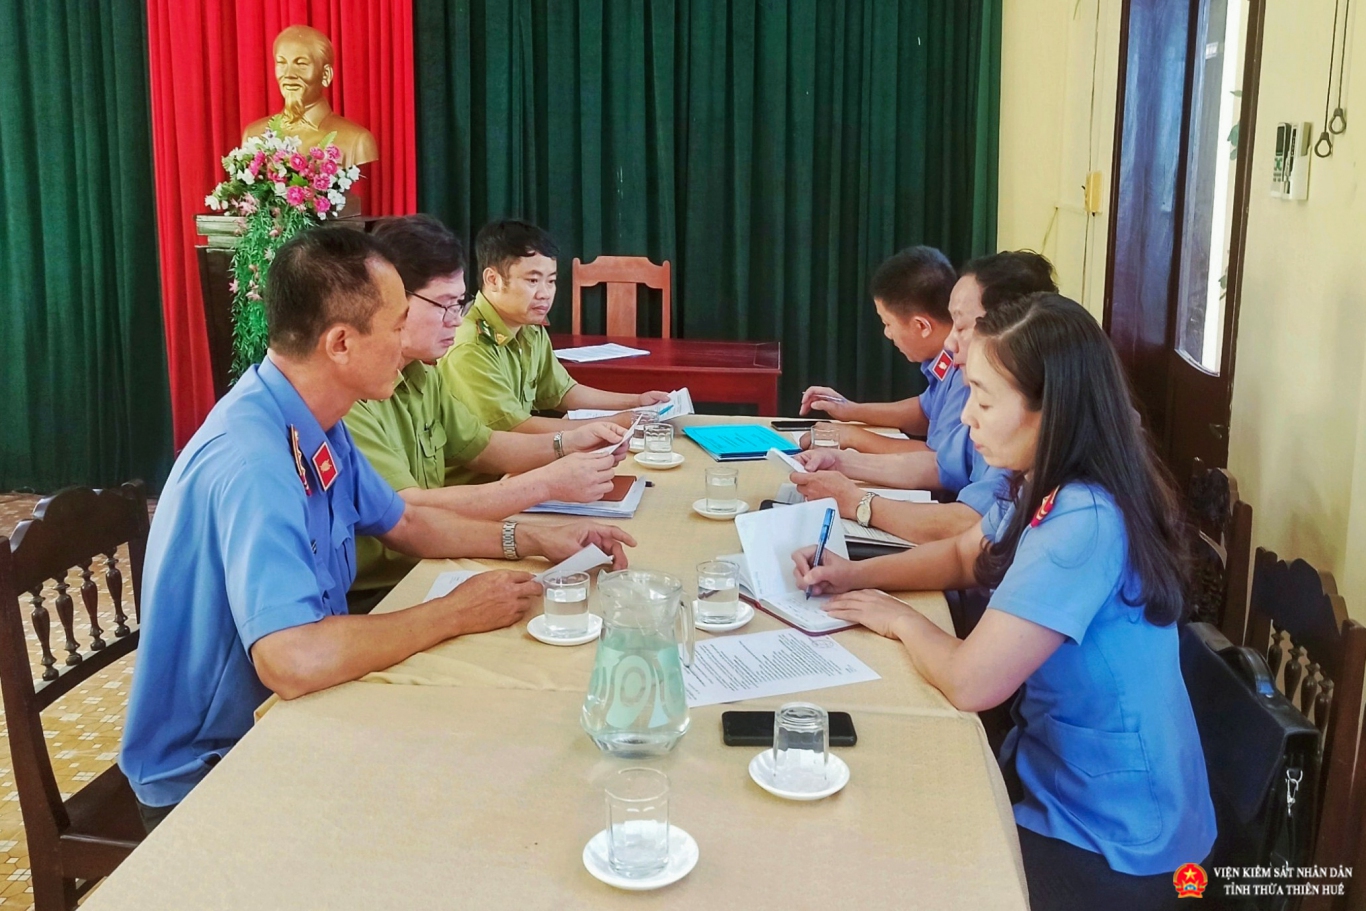 Đoàn kiểm sát của đơn vị làm việc với Hạt Kiểm lâm thị xã Hương Thủy